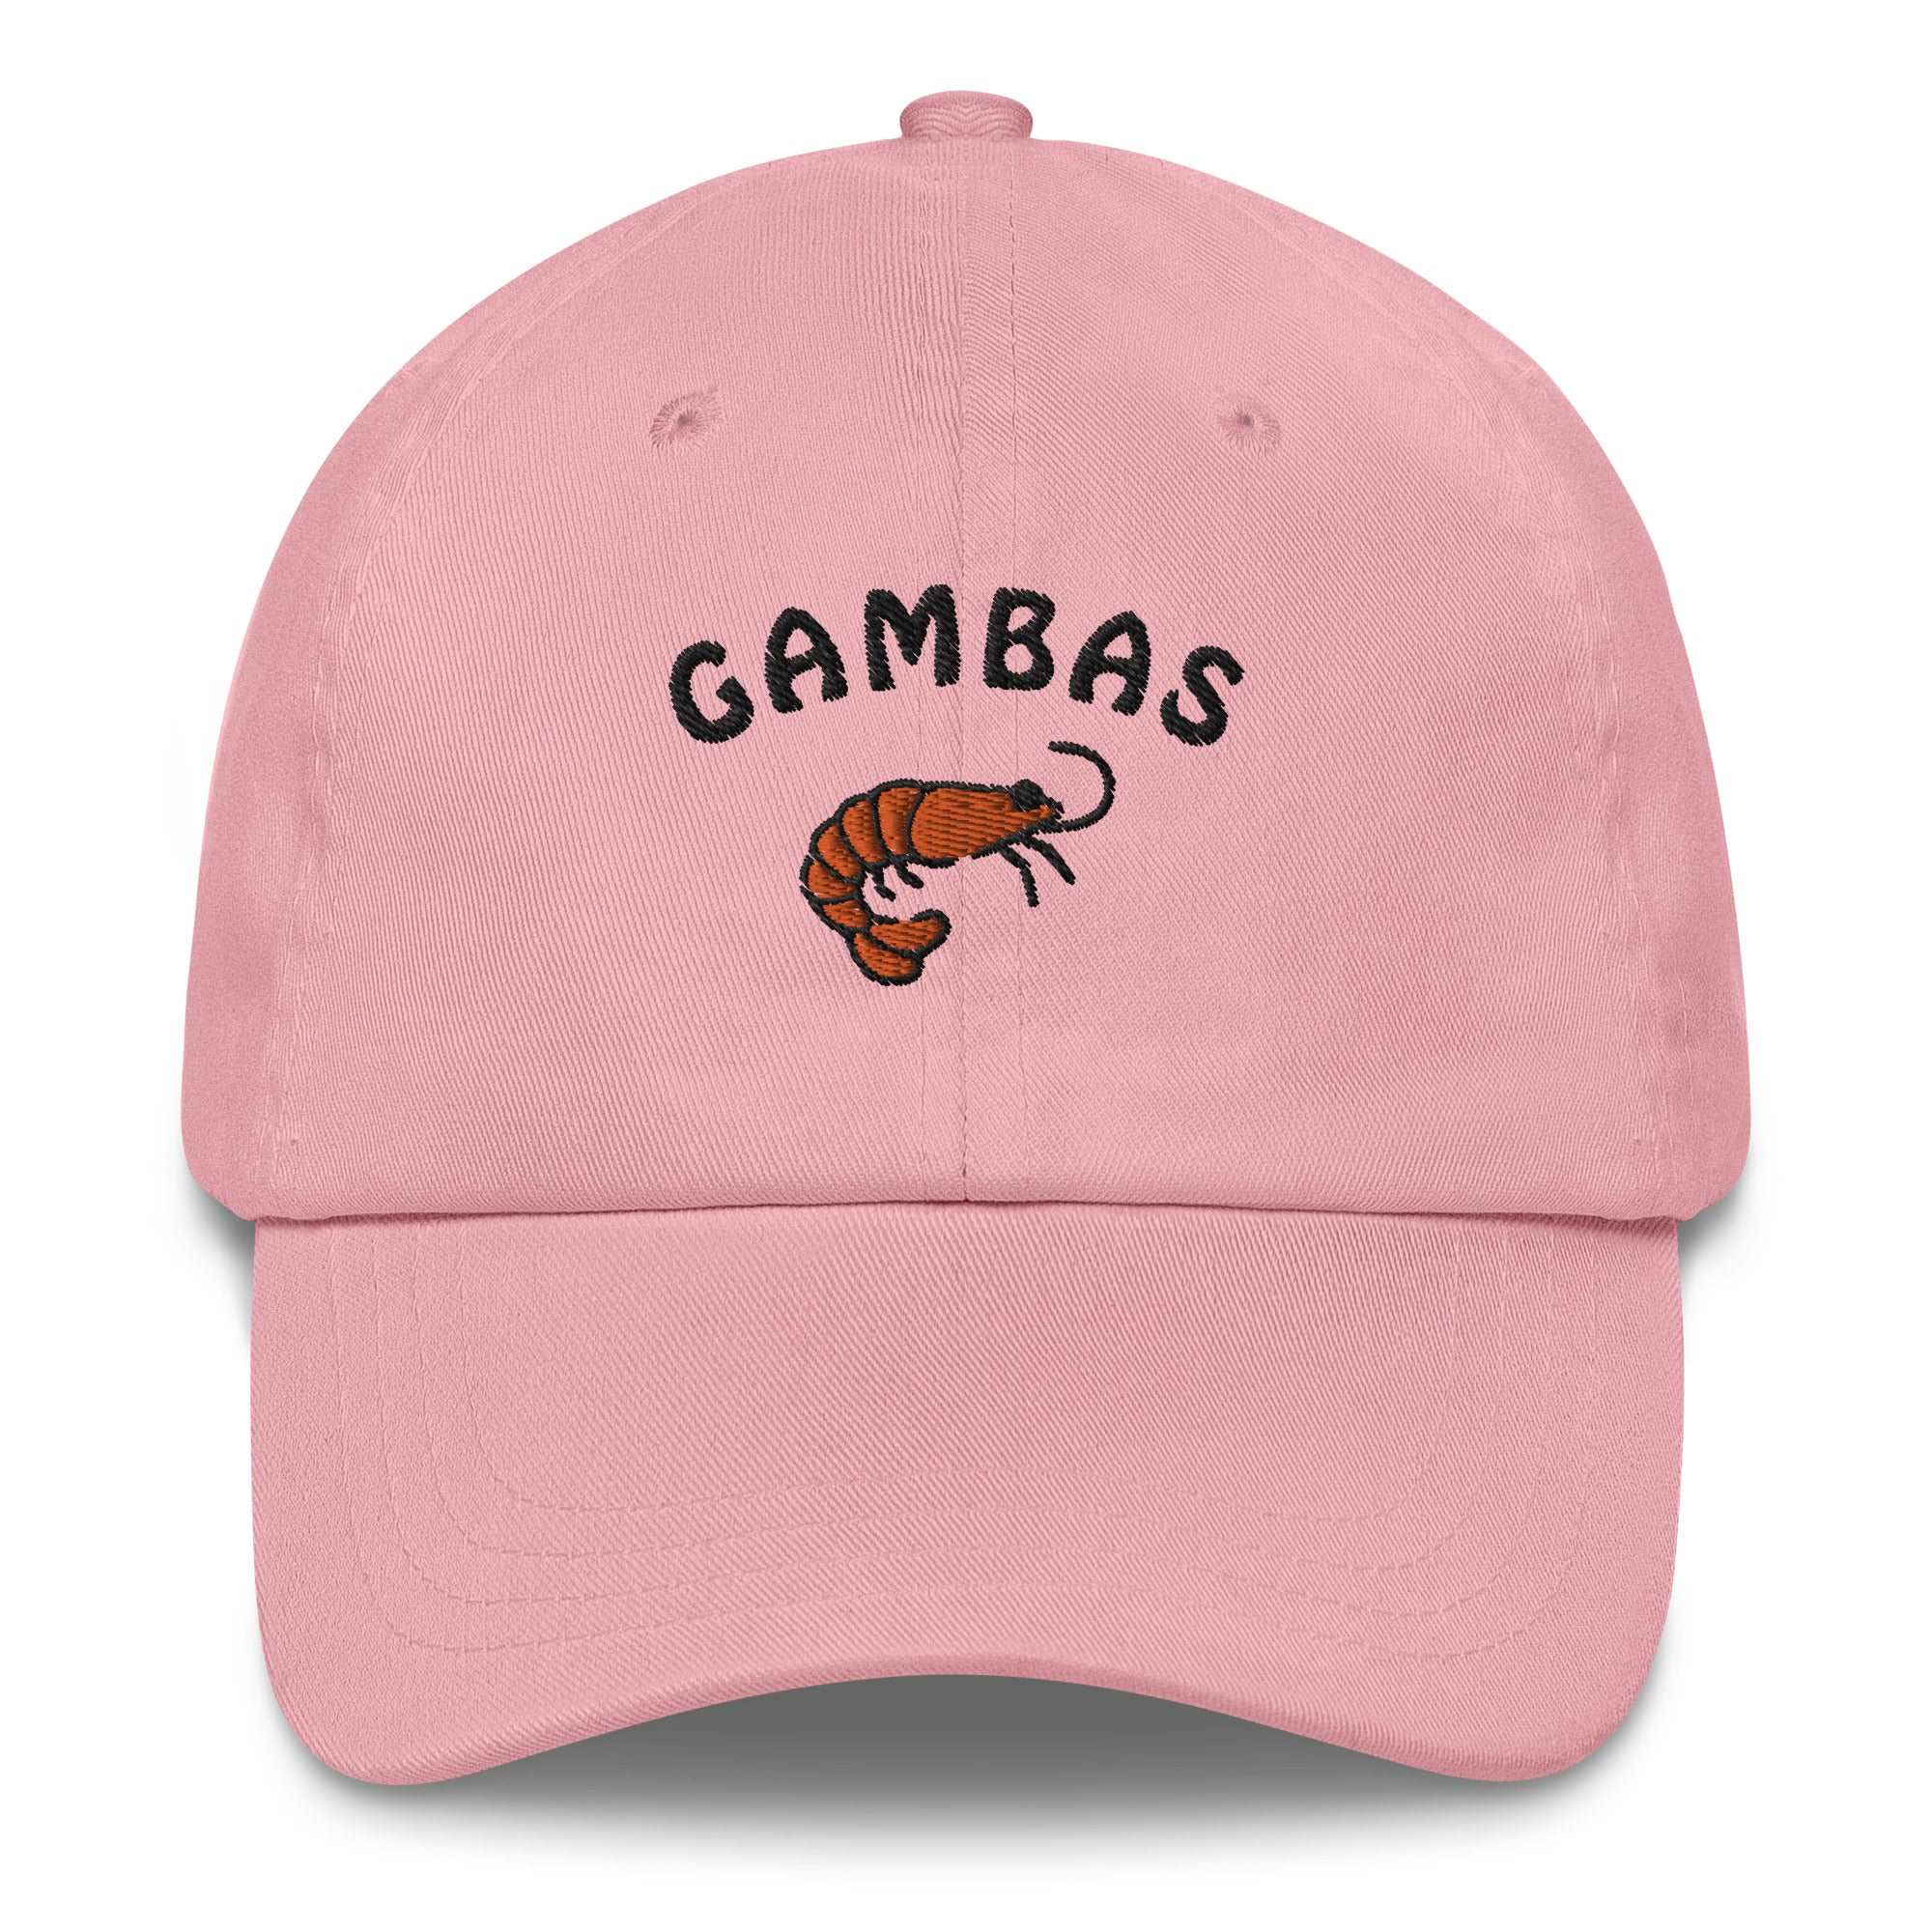 Gambas - Cap